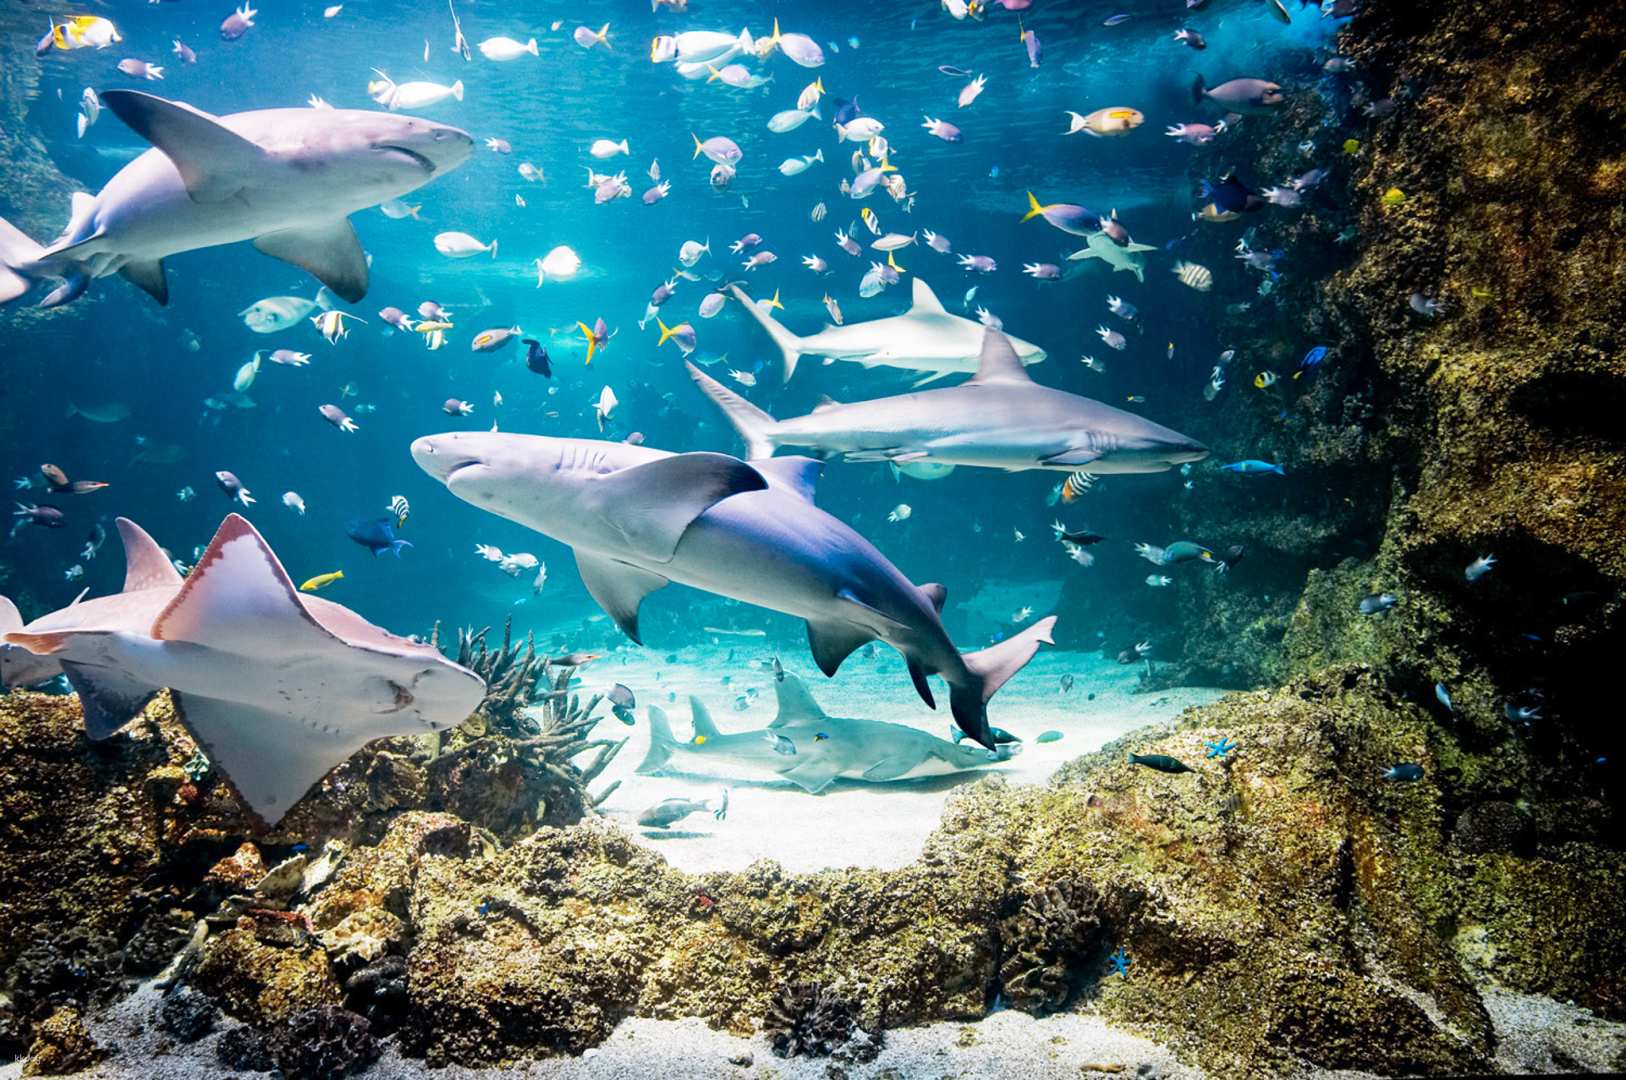 澳洲-雪梨水族館 SEA LIFE Sydney Aquarium 門票| 掃描QR Code入場